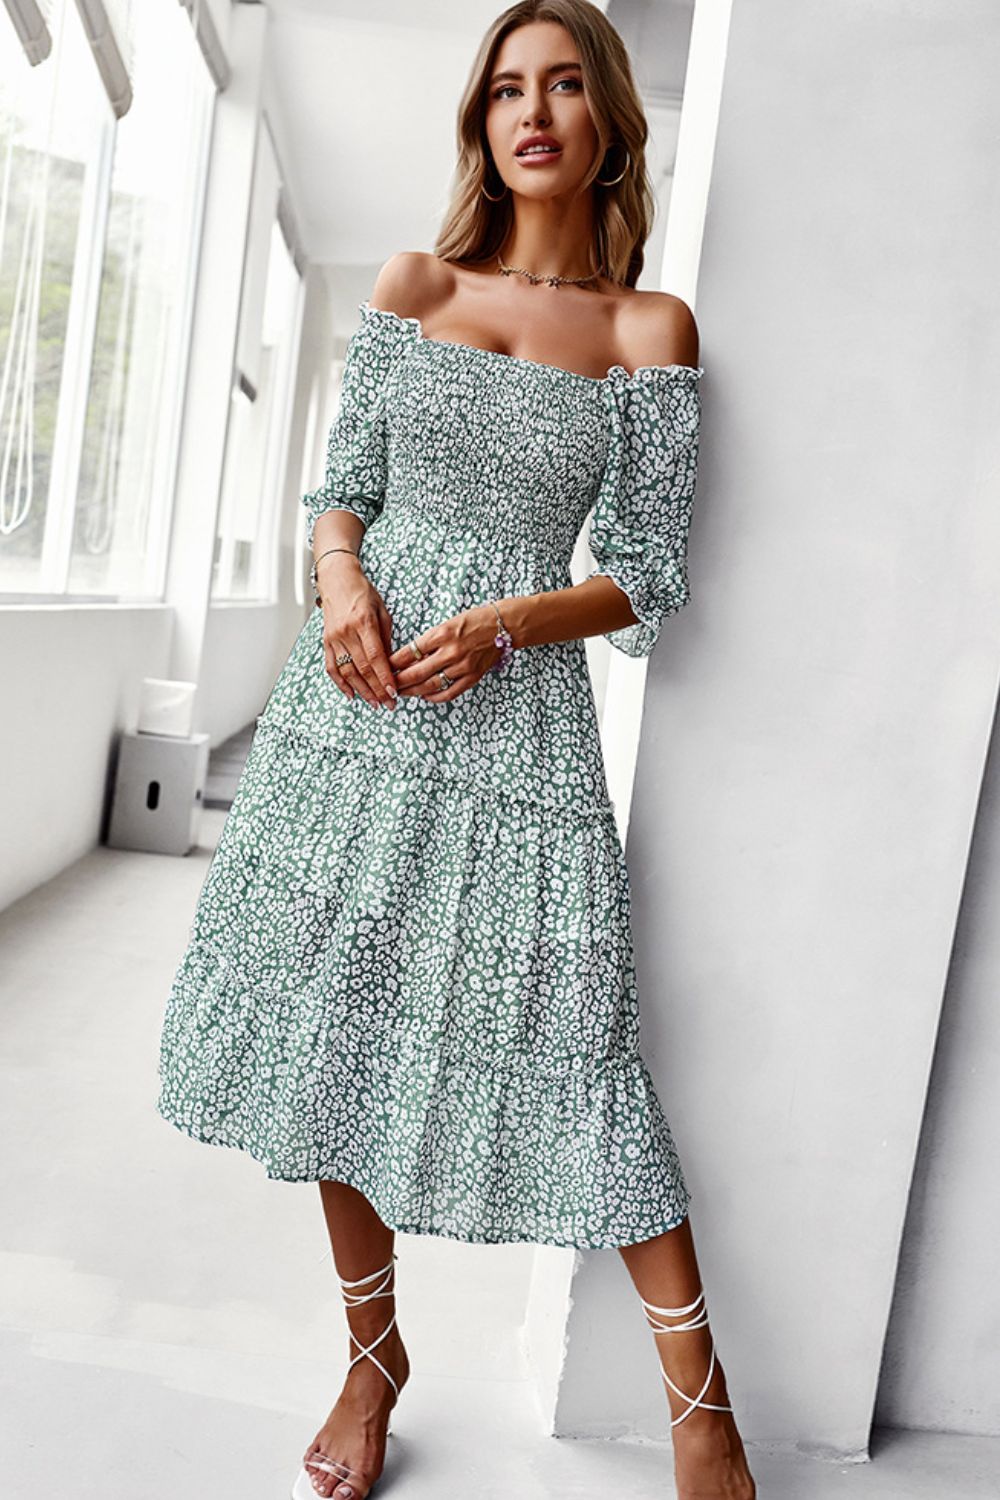 Floral Off-Shoulder Smocked Midi Dress (S-XL)